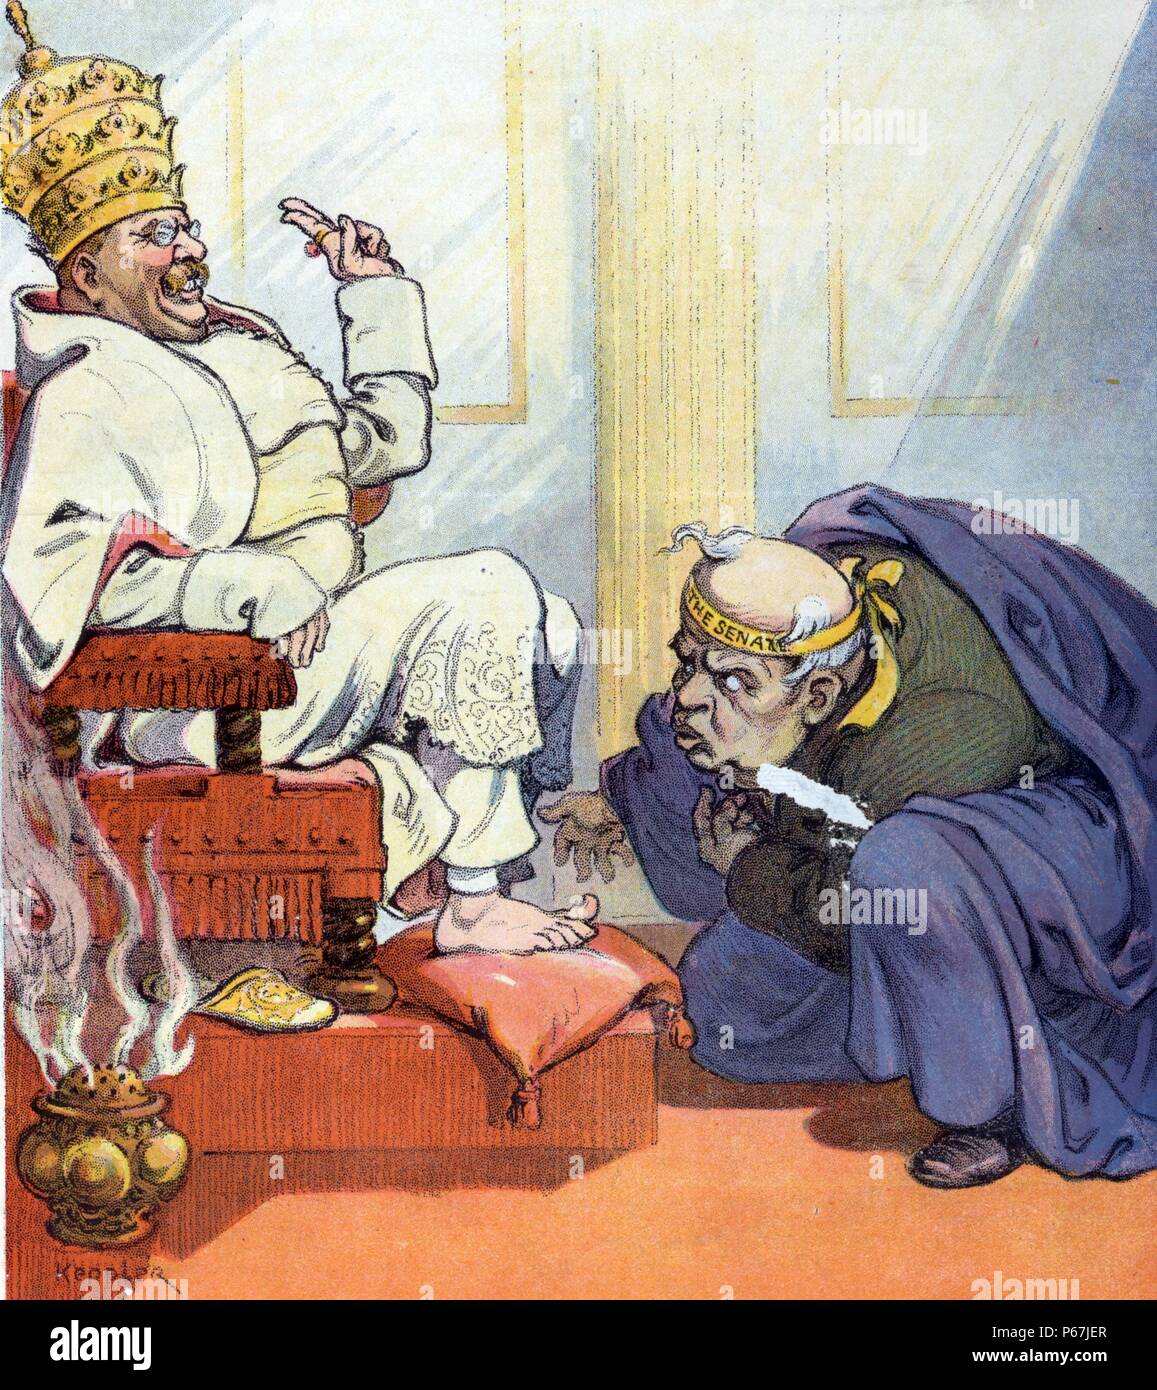 Le premier pape theo' Theodore Roosevelt comme "Pape" Theo la première assise sur un trône, portant la tiare papale, qu'un homme portant la mention "Le Sénat' s'incline devant lui. Banque D'Images